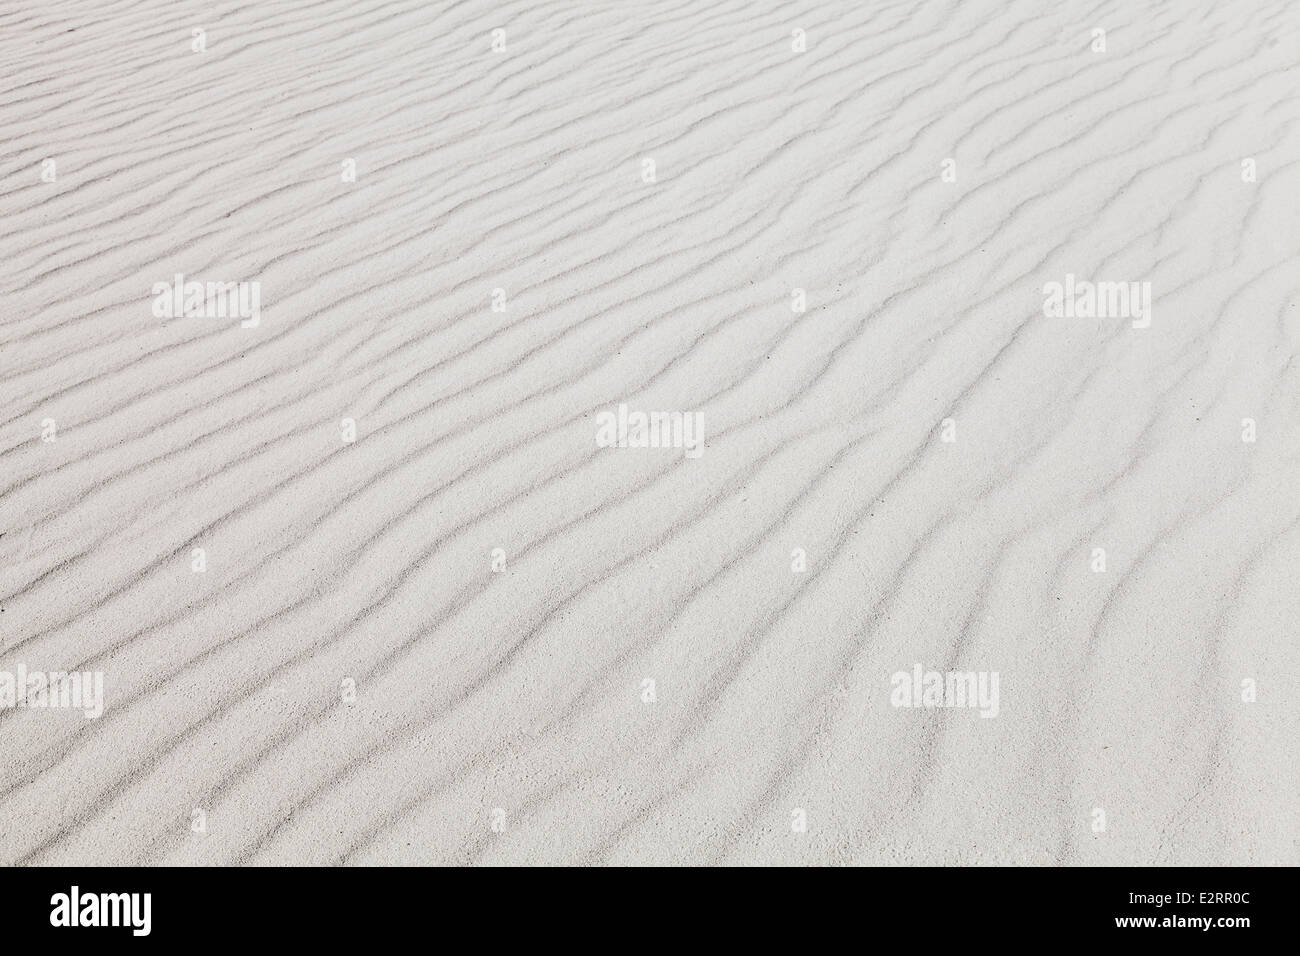 Weiße Sandstrände mit Wellenmuster. Hintergrundtextur Foto Stockfoto